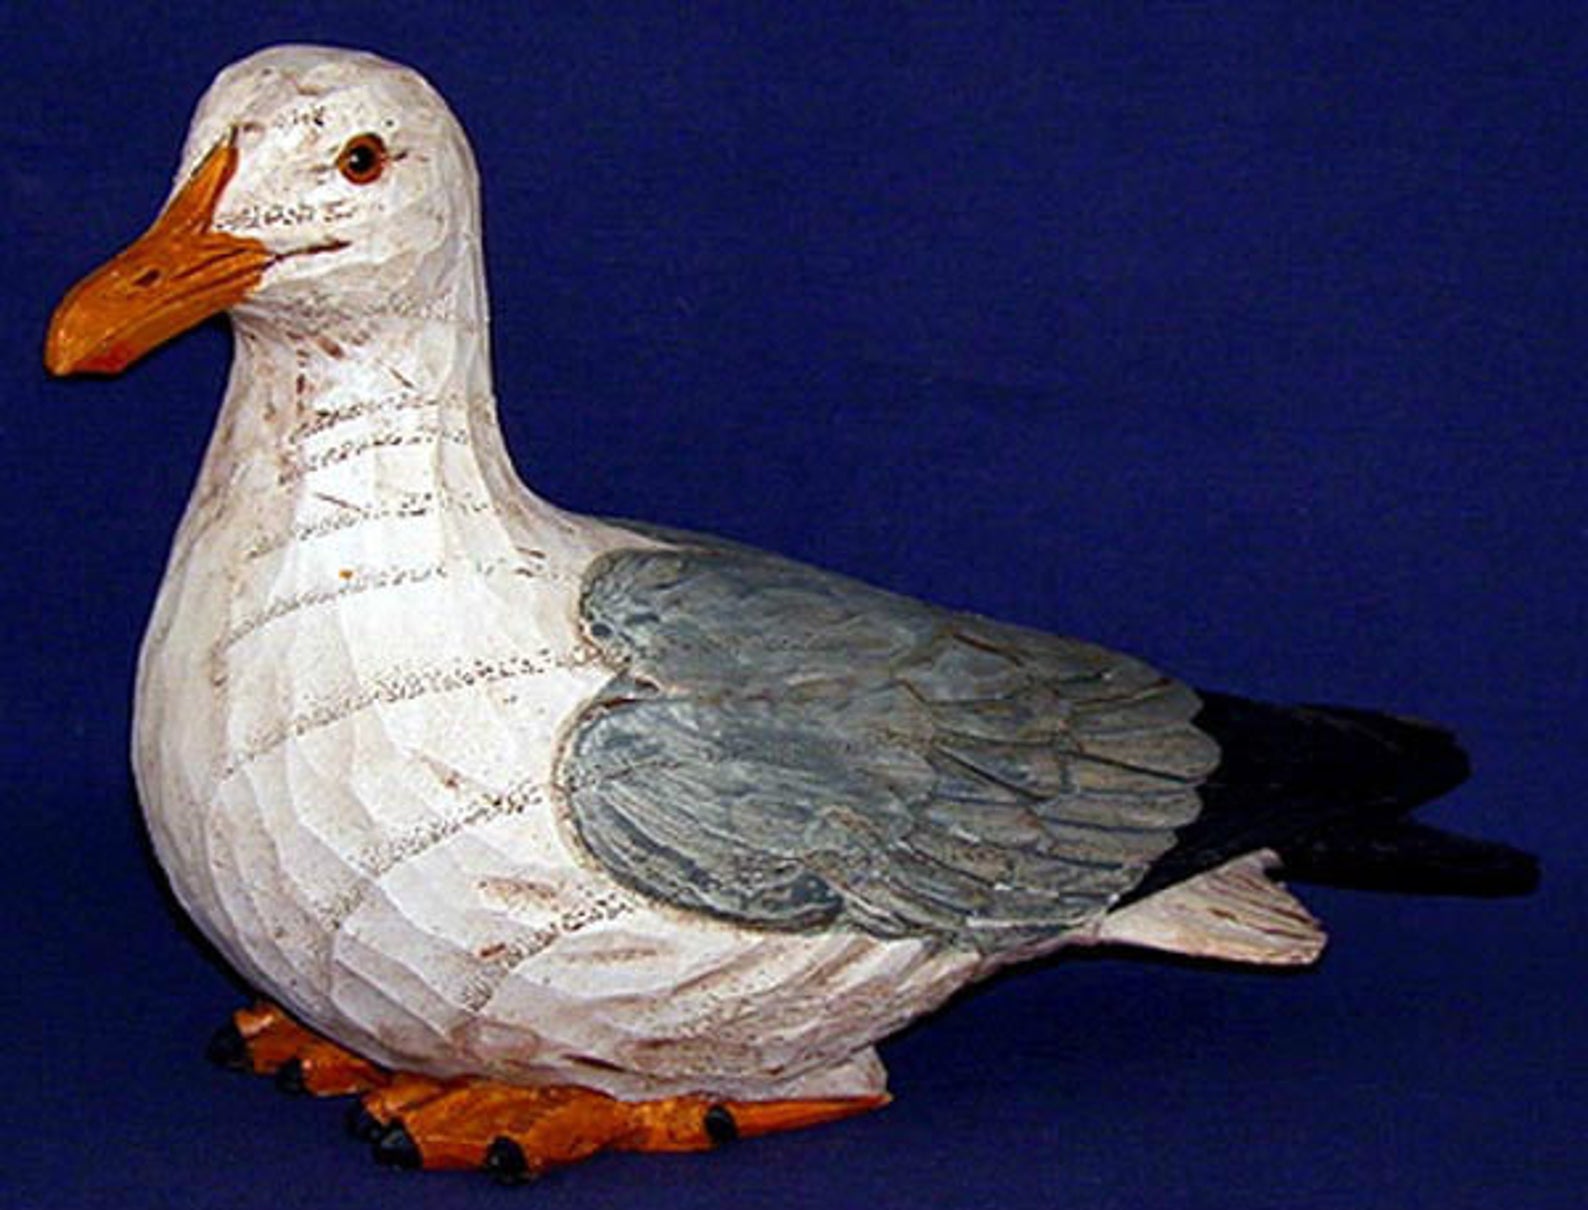 Что нужно знать о голубе китайская чайка перед приобретением